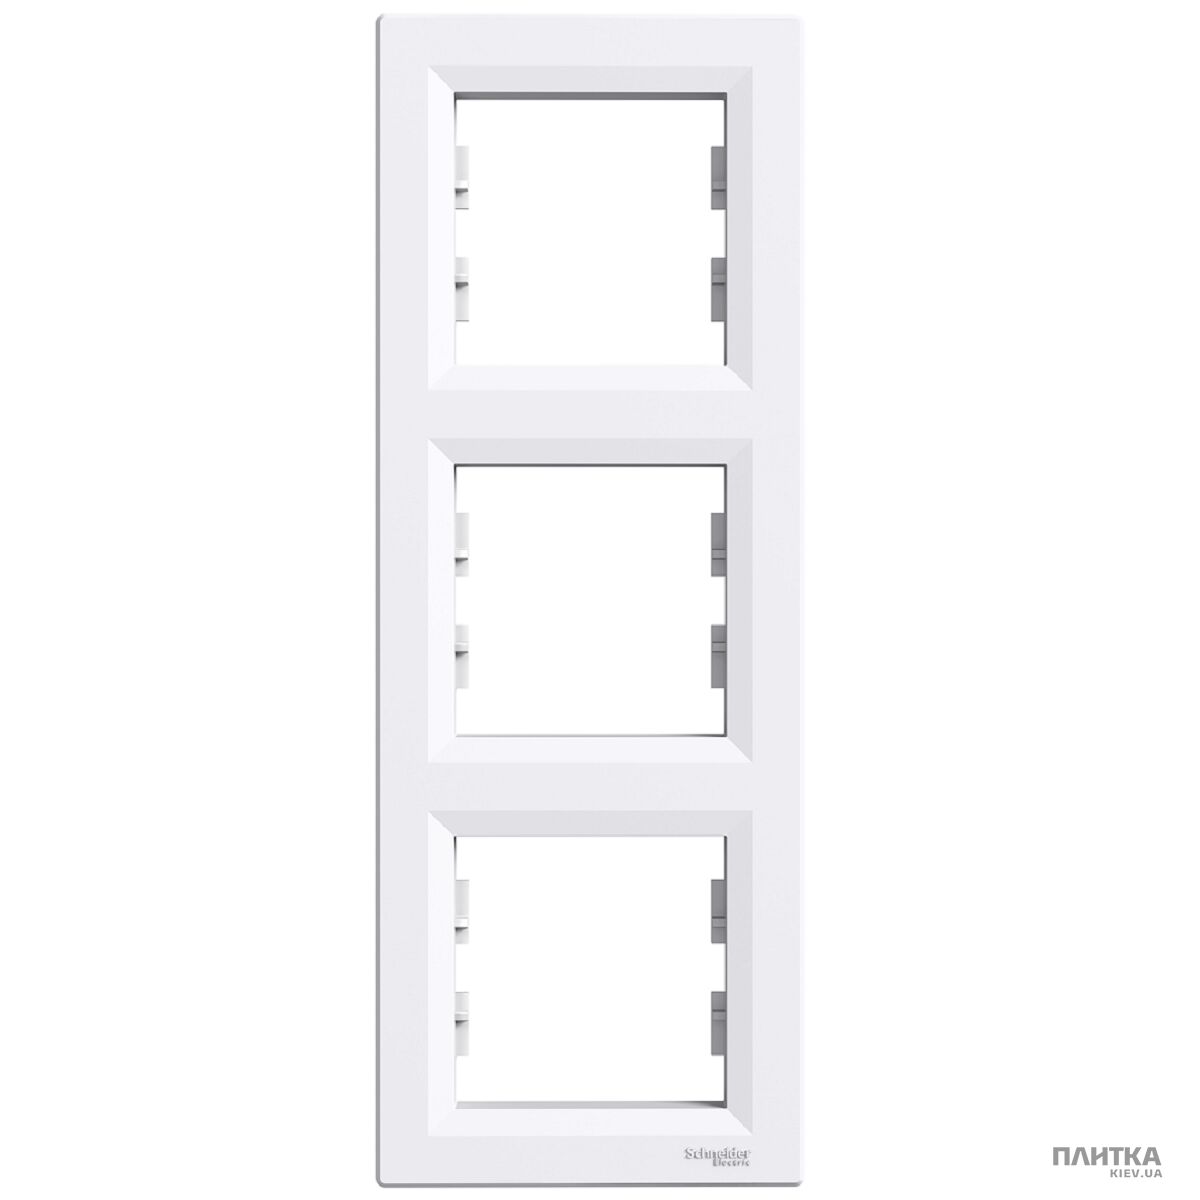 Рамка Schneider Asfora Рамка 3-постовая вертикальная, белый белый